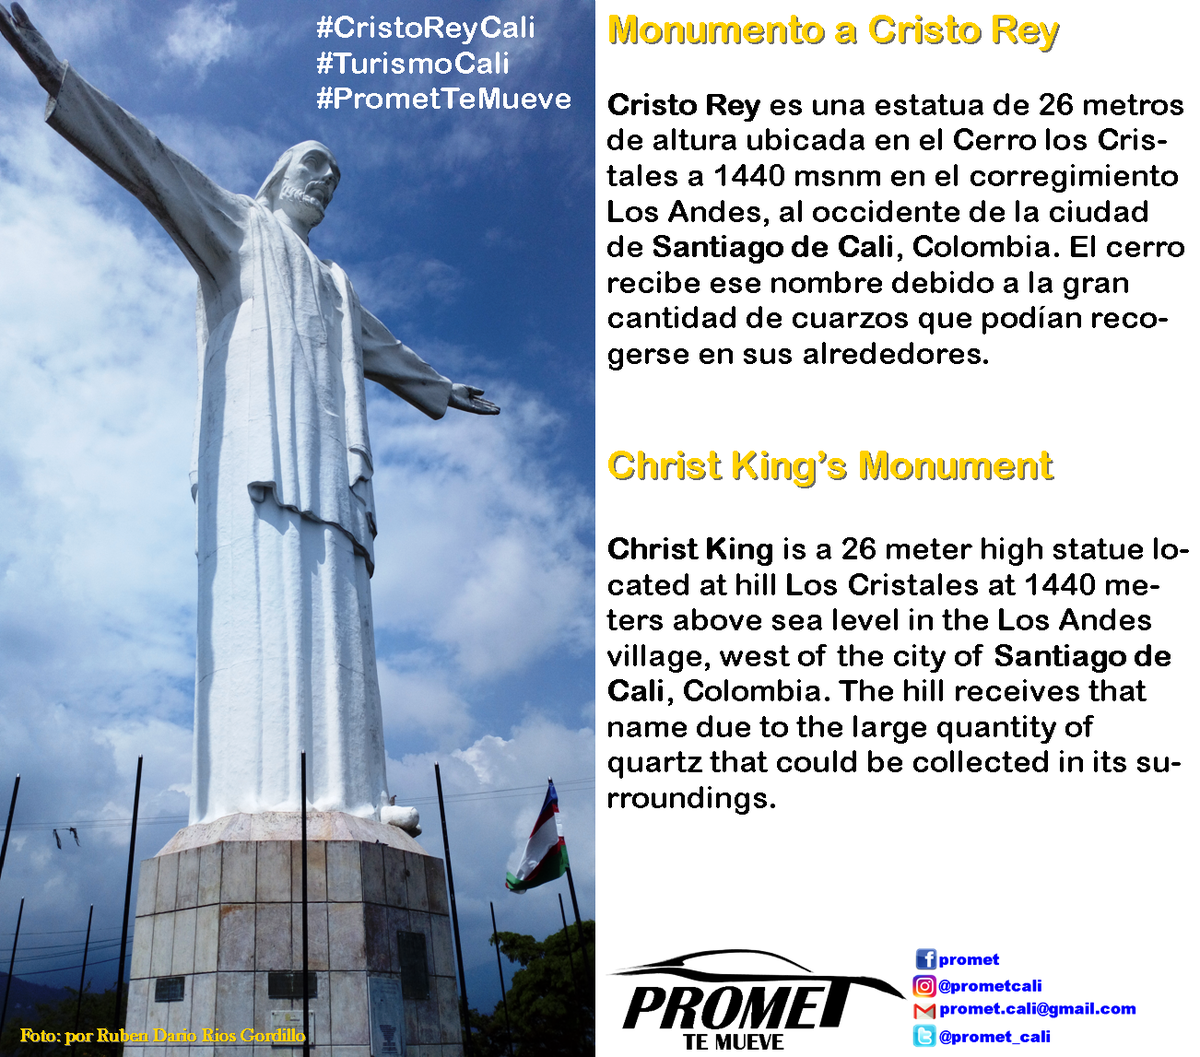 Monumento a Cristo Rey, a demas de tener una espectacular vista de nuestra hermosa ciudad, es un lugar lleno de mucha cultura e historia, te invitamos a conocerlo!
#CaliCo #turismocali #cristoreycali #hotelescali #transportecali #promettemueve